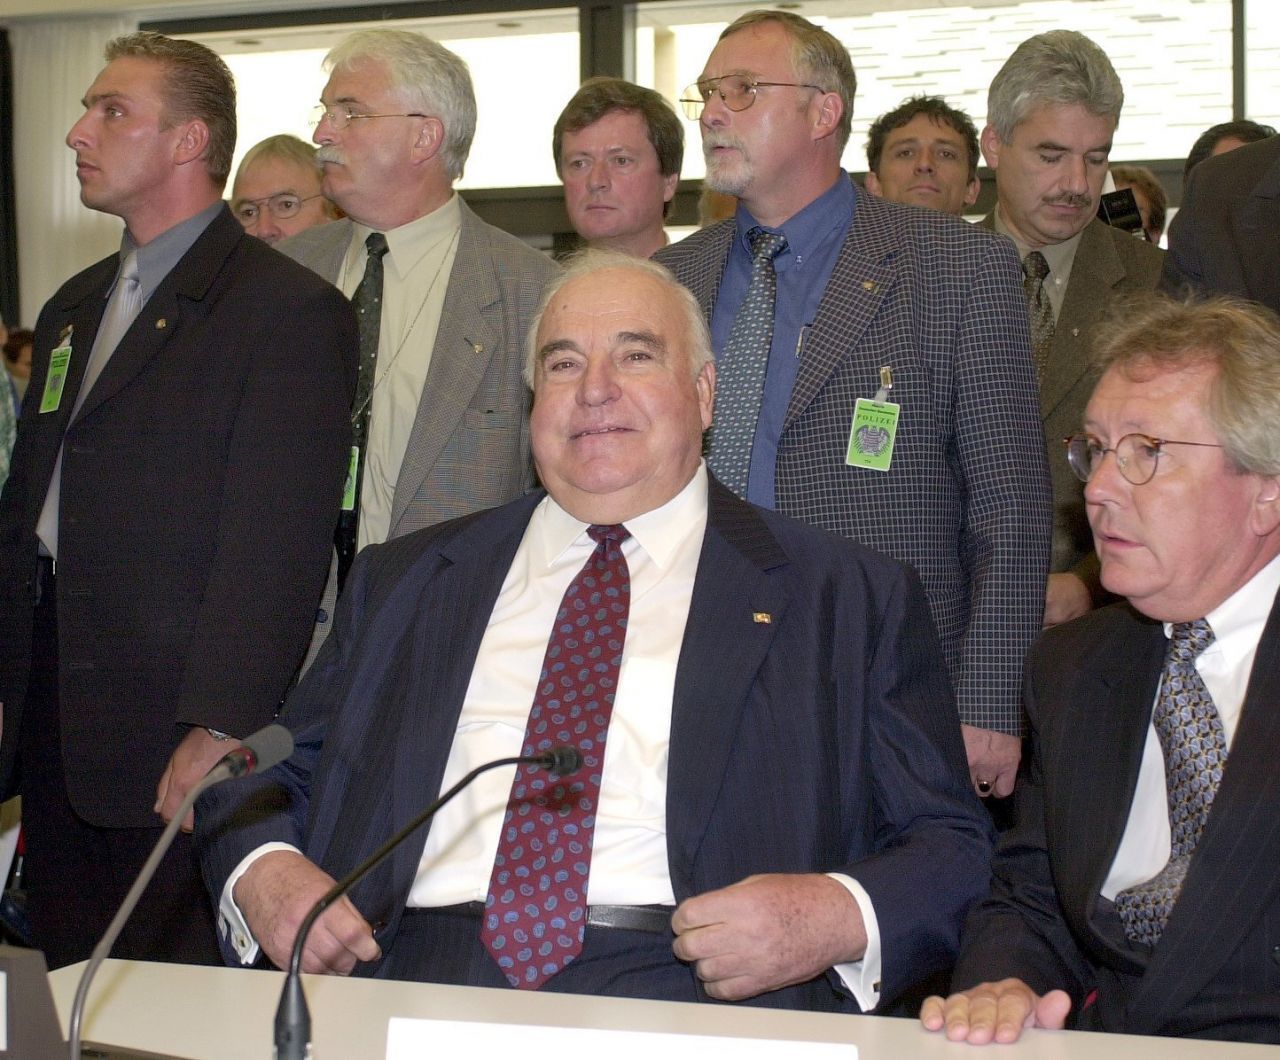 Parteispenden werfen ihren Schatten auf Kanzler Helmut Kohl: Altkanzler Helmut Kohl schlitterte 1999 in die CDU-Spendenaffäre. Der Waffenhändler Karlheinz Schreiber sollte 1991 der CDU 1 Millionen D-Mark gespendet haben, die wiederum die CDU nicht versteuerte. Doch das war nur der Anfangsverdacht. Am Ende musste Kohl zugeben, dass die CDU über "schwarze Konten" mit mehreren nicht öffentlichen und somit illegalen Parteispenden